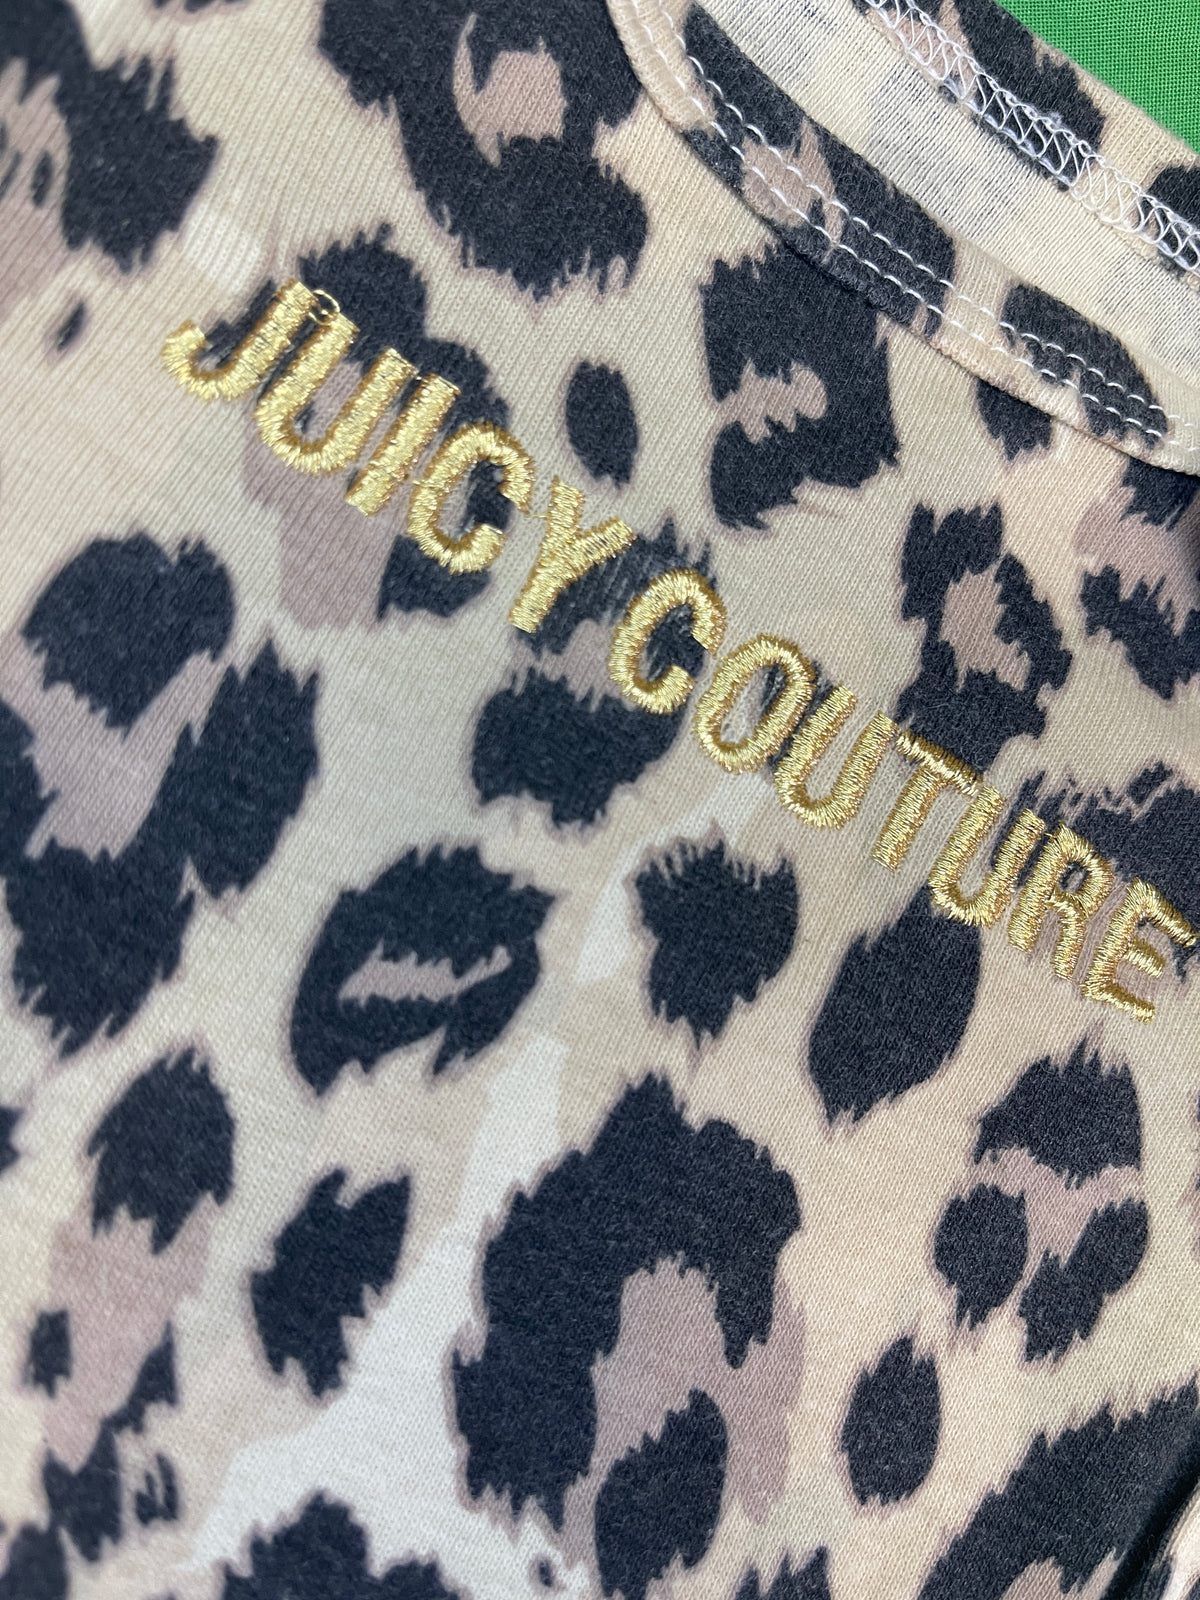 Juicy Couture Leopard Print Bodysuit/Vest Infant Baby 3-6 Months